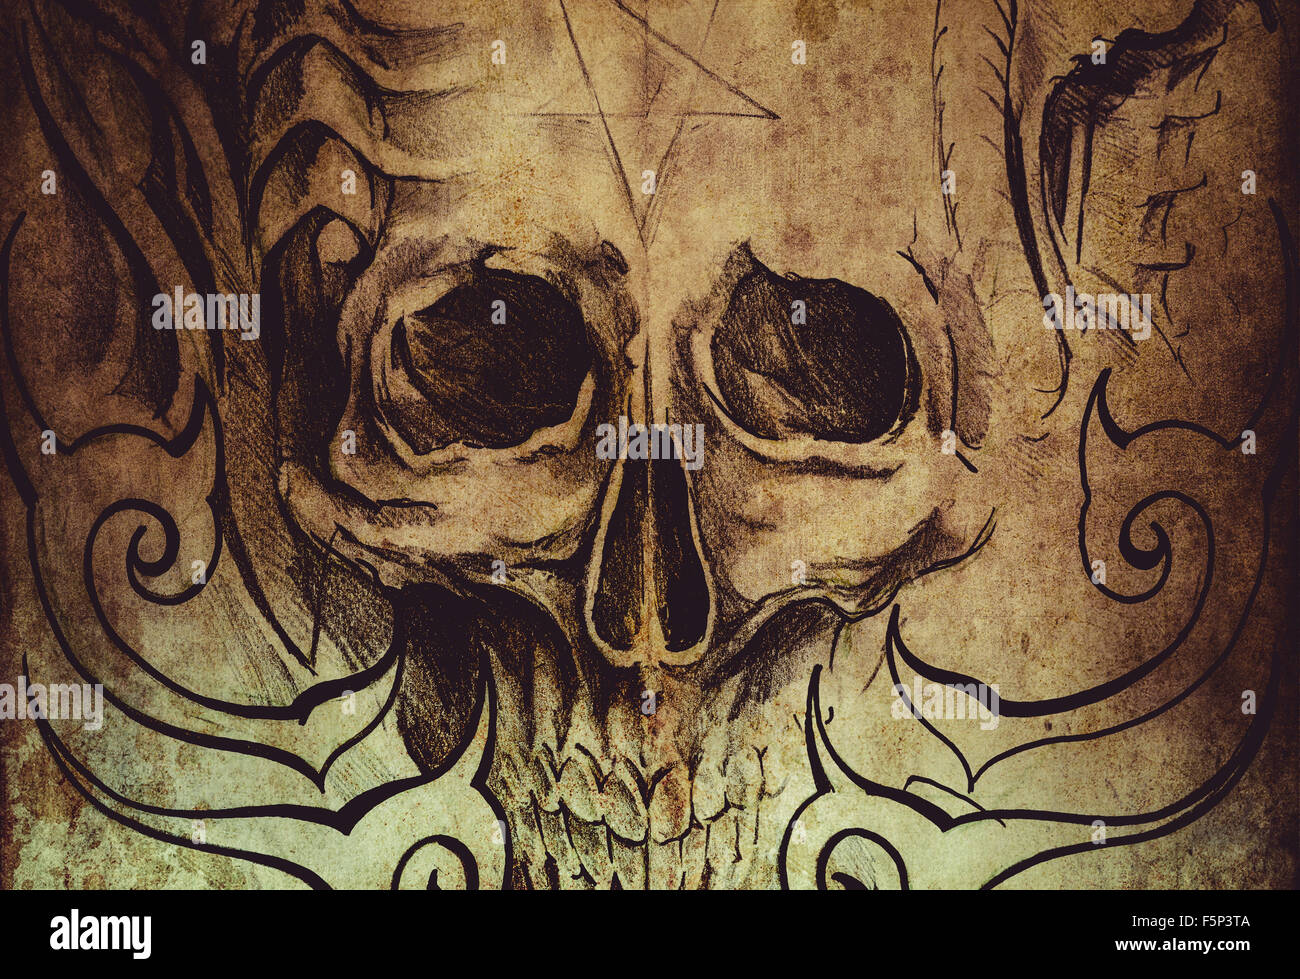 L'art du tatouage, croquis de crâne avec dessins tribal Banque D'Images